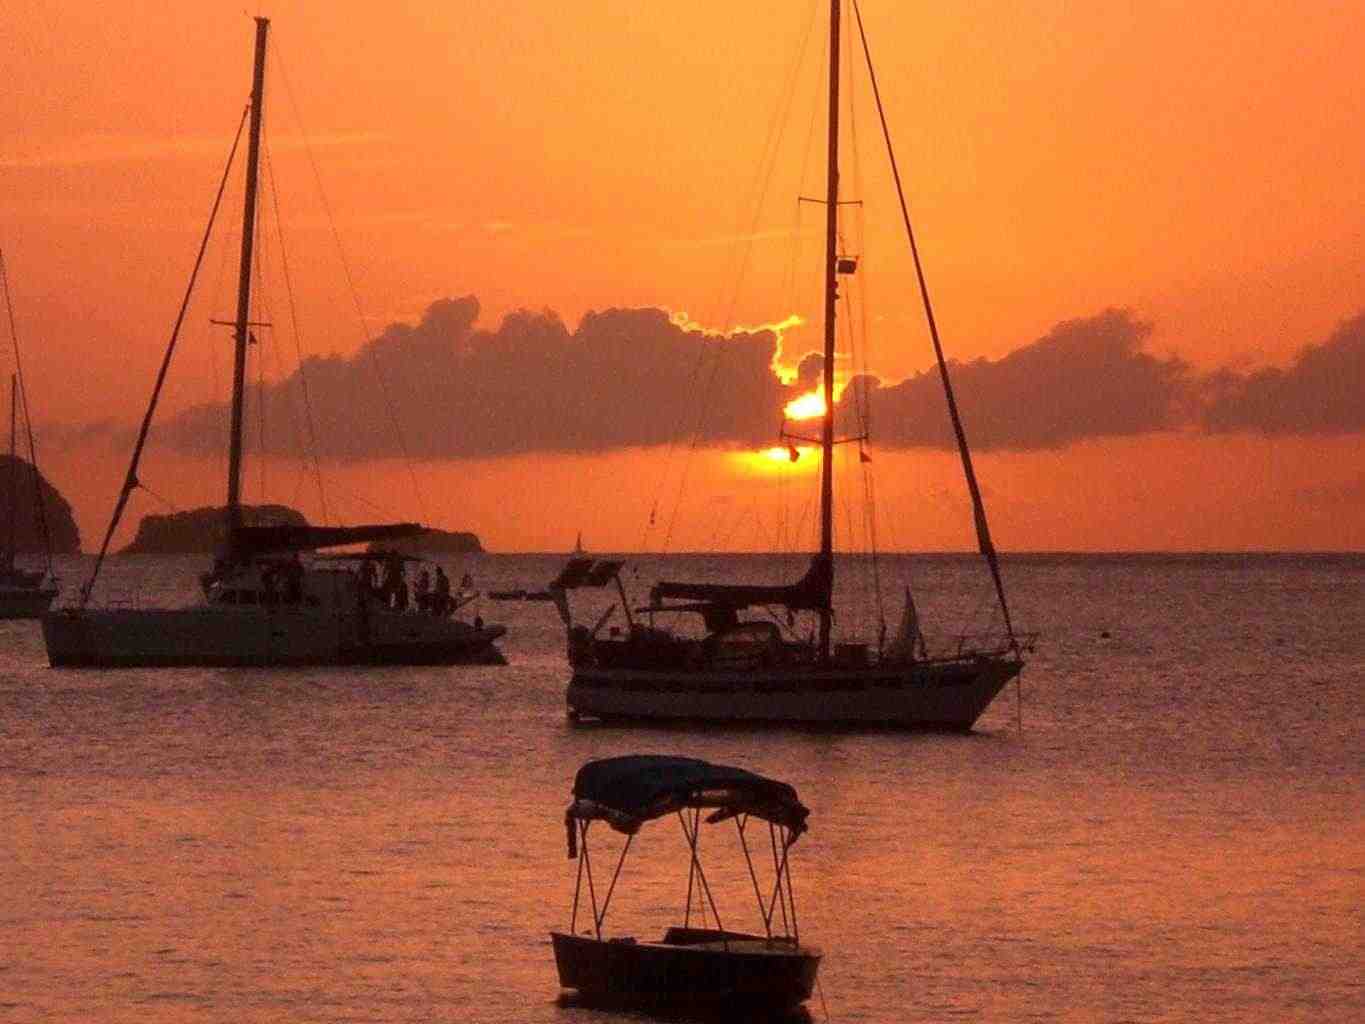 Caraibi in Barca a Vela ESTATE 2018 